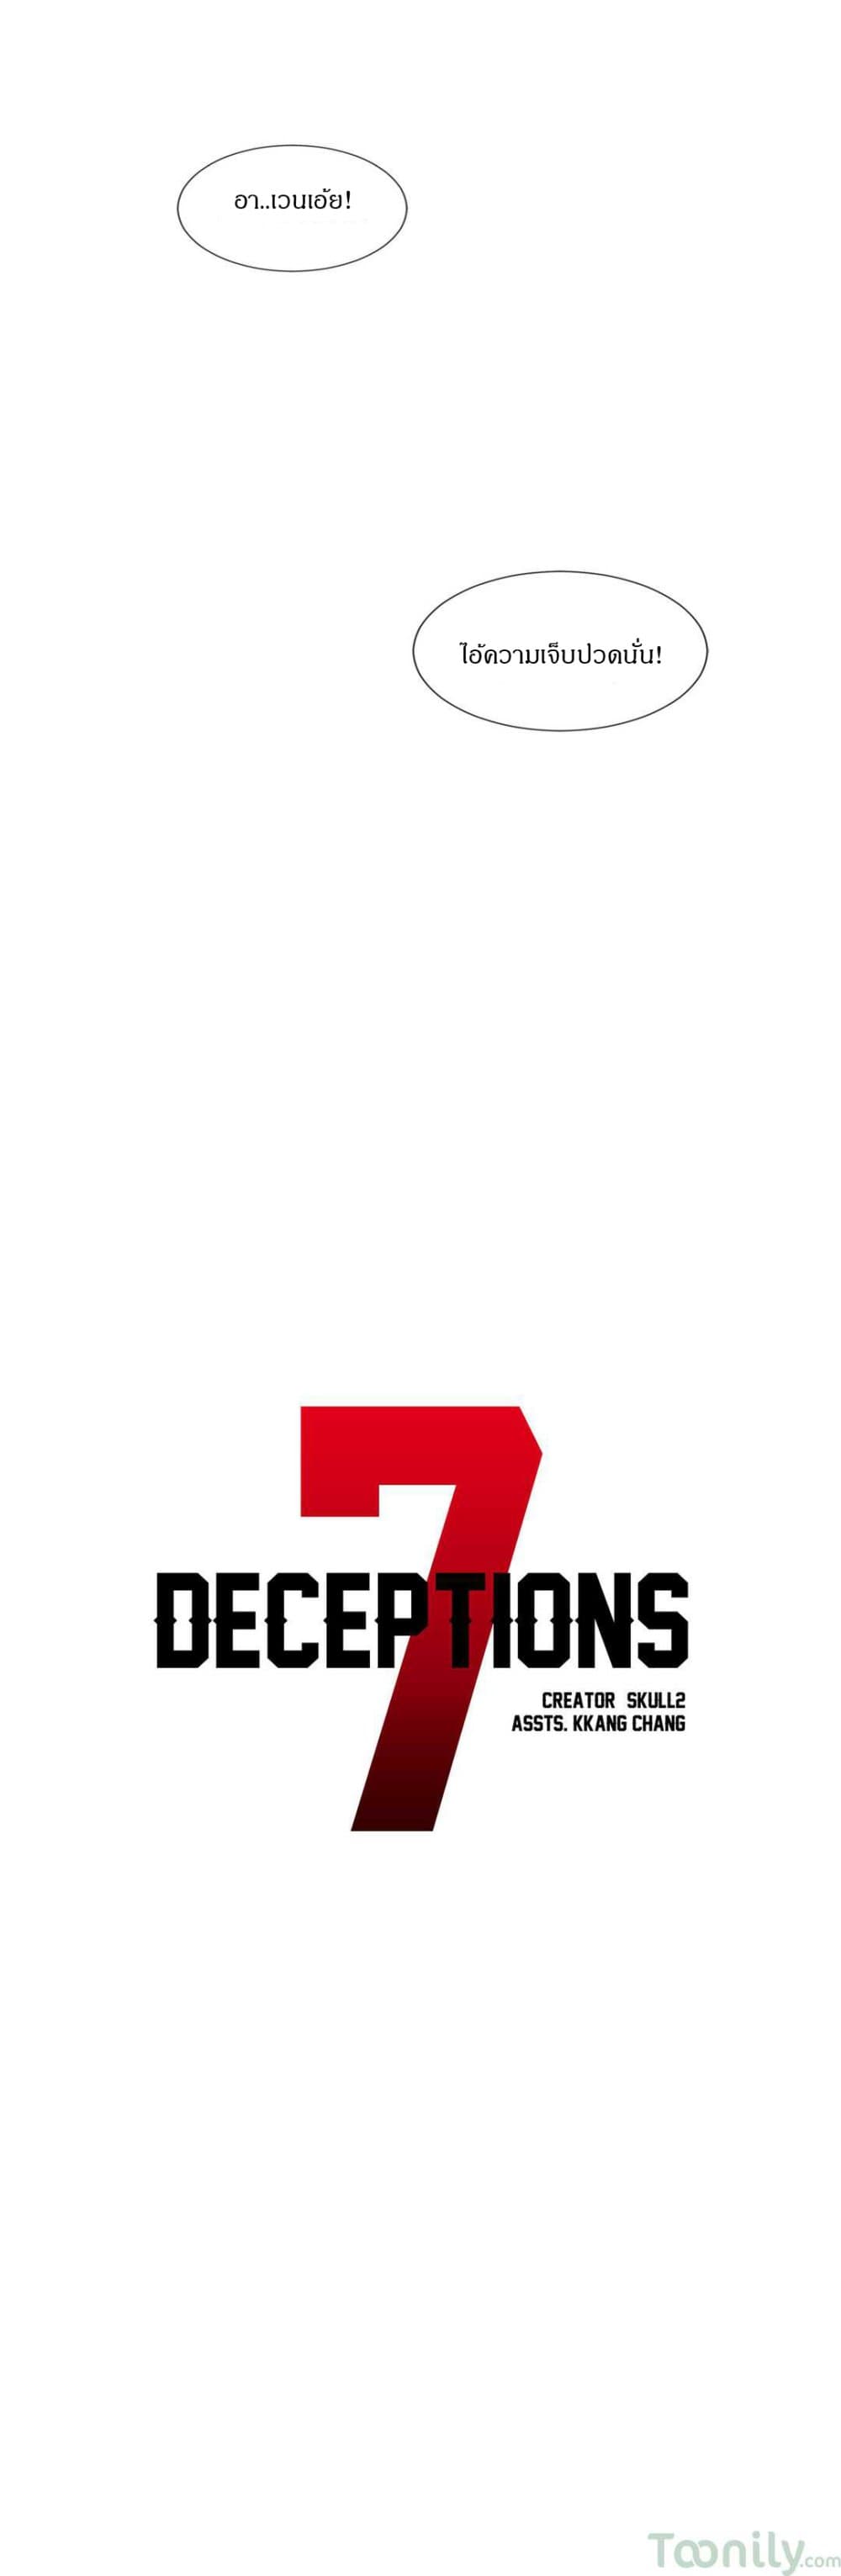 Deceptions 22 (6)